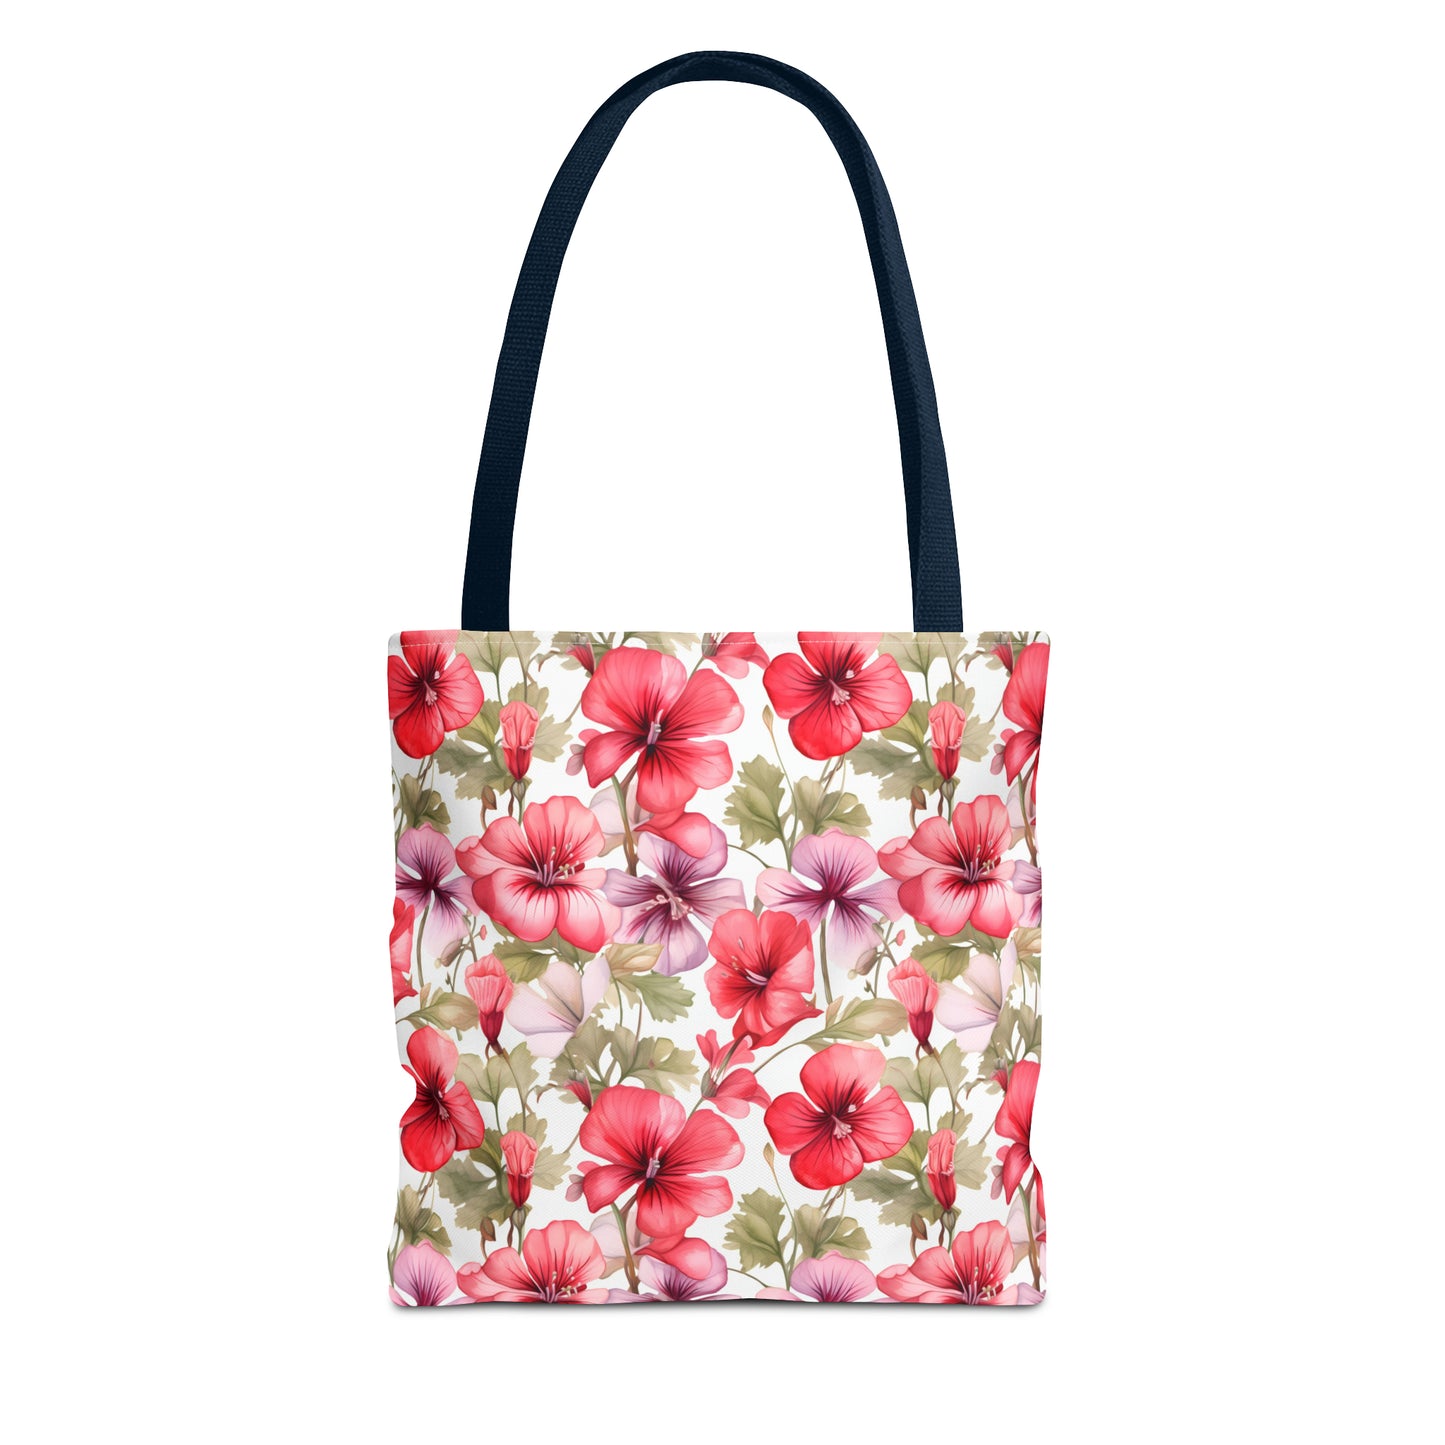 Pastel Blooms Pansy Tote Bag (13" x 13")